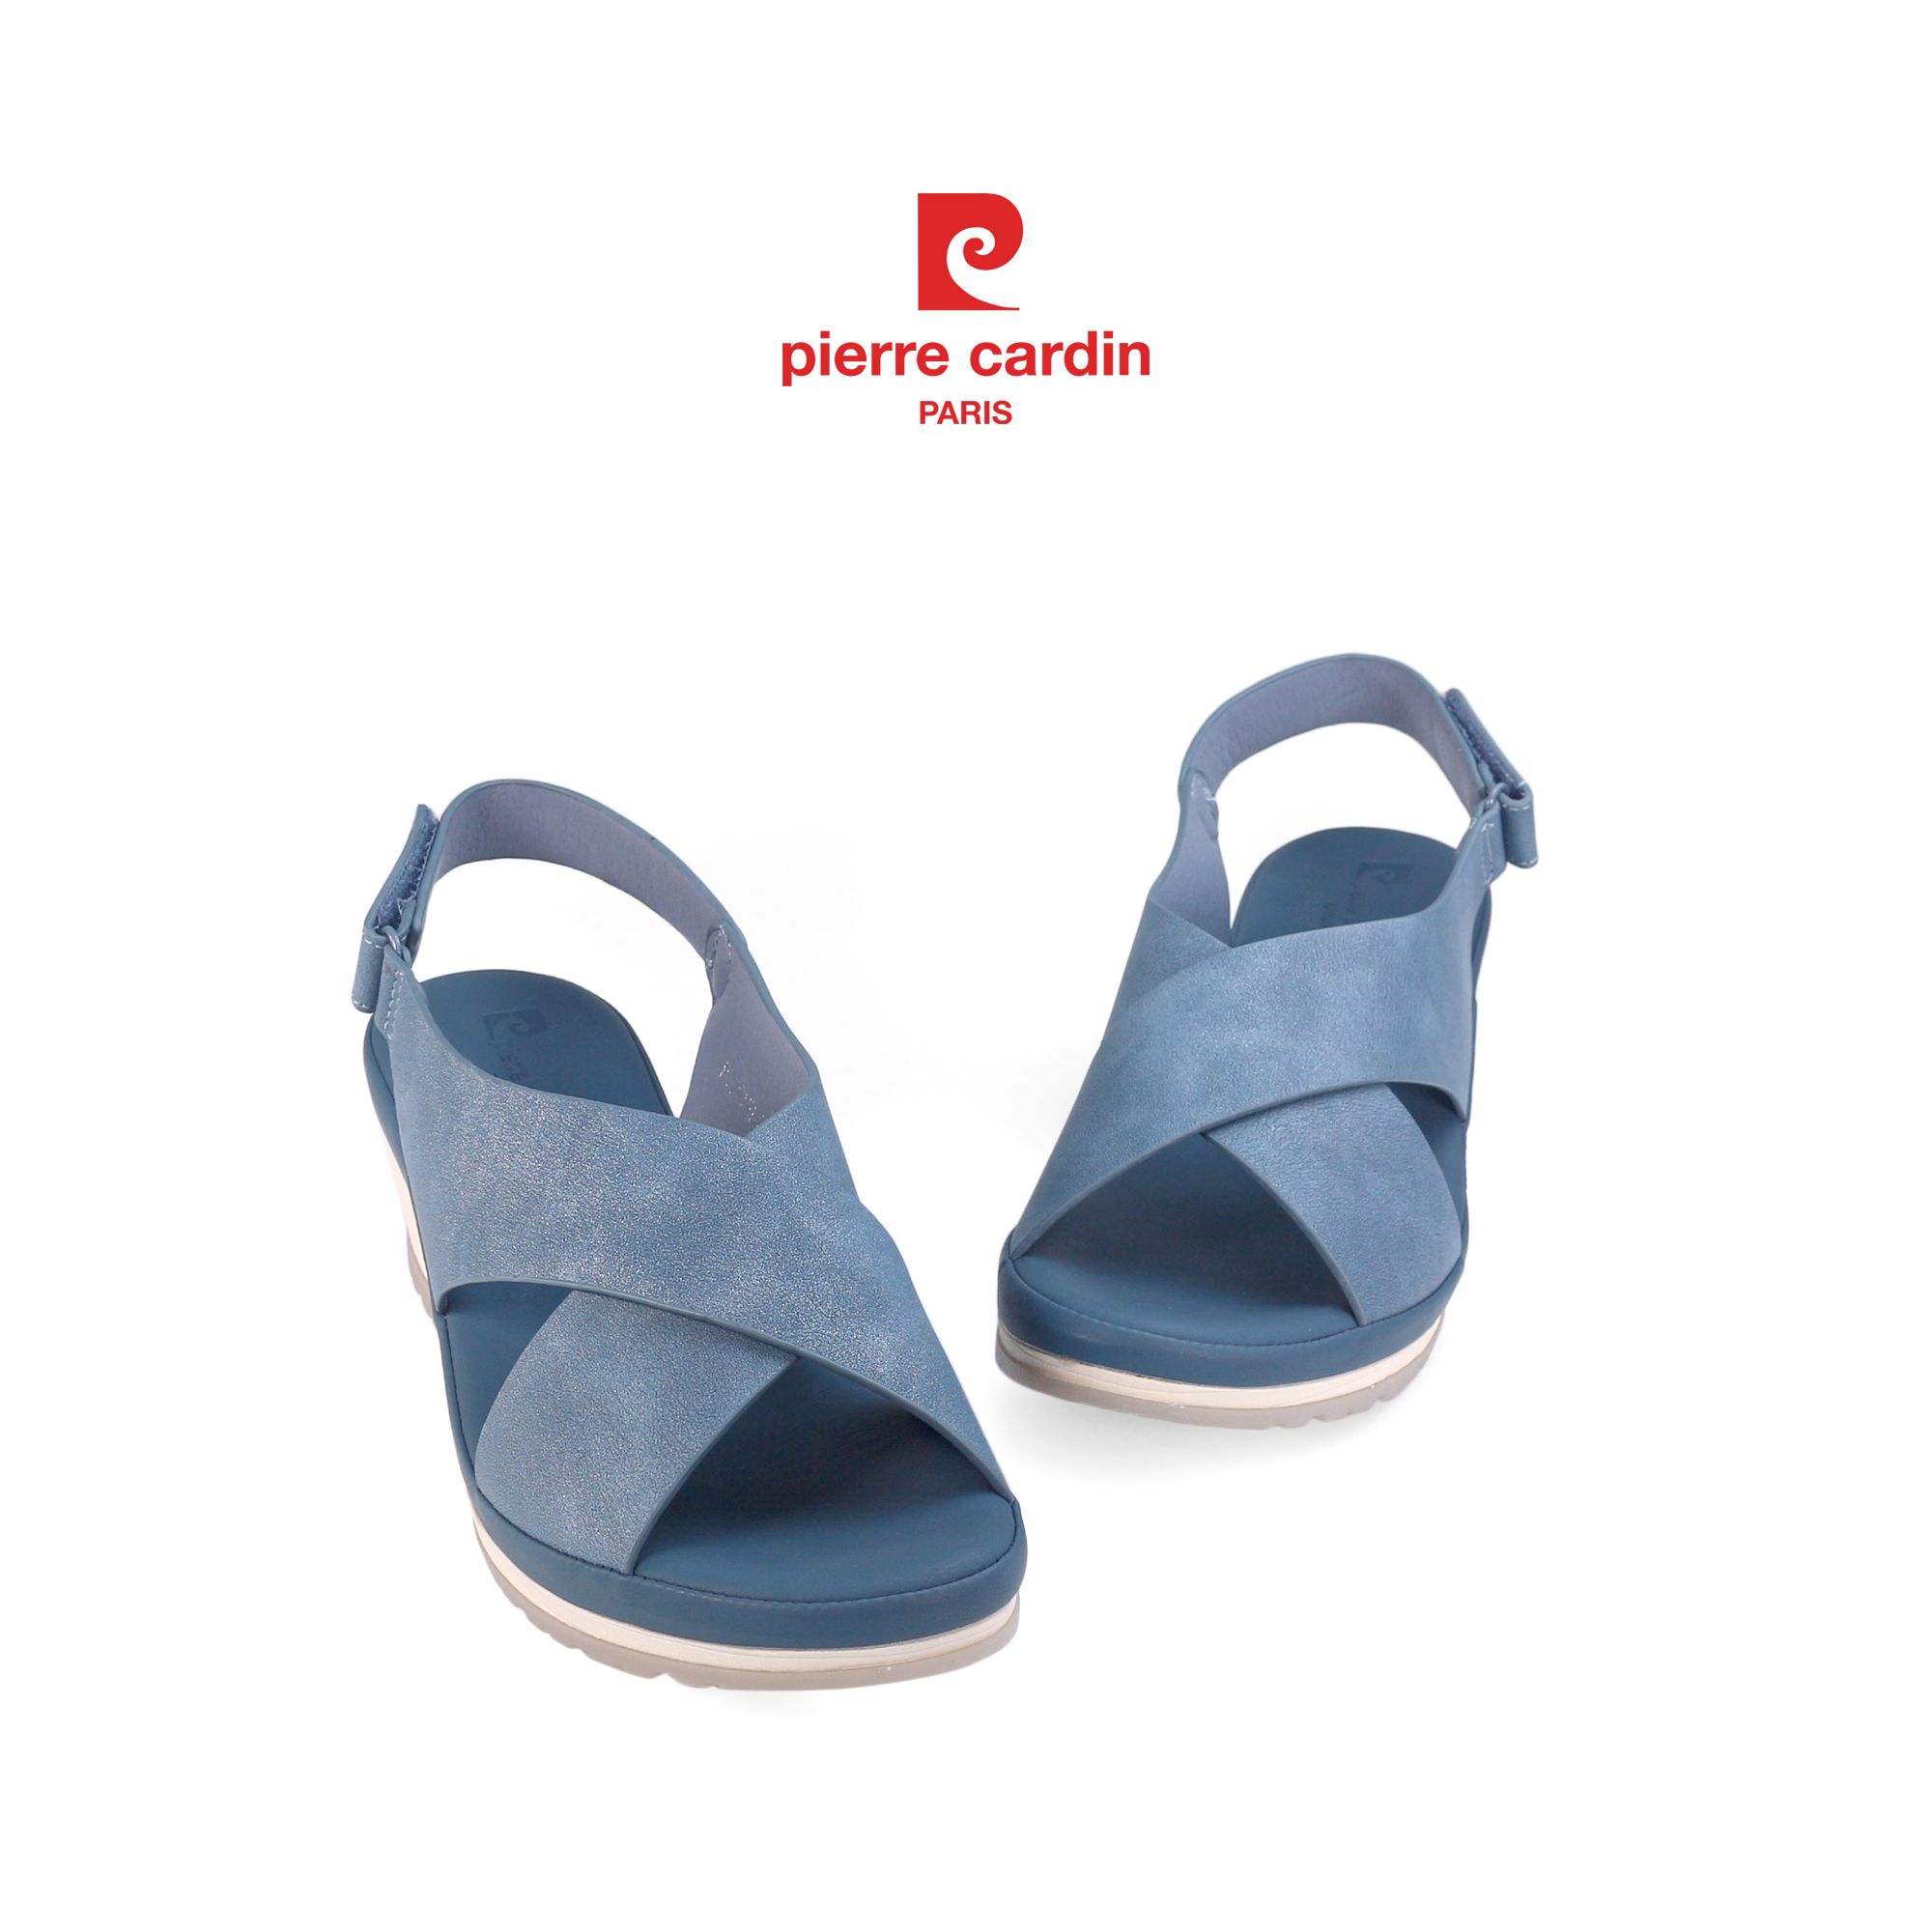 Pierre Cardin Paris Vietnam: Sandals Cao Gót Pierre Cardin - PCWFWSH 235 (+4cm)